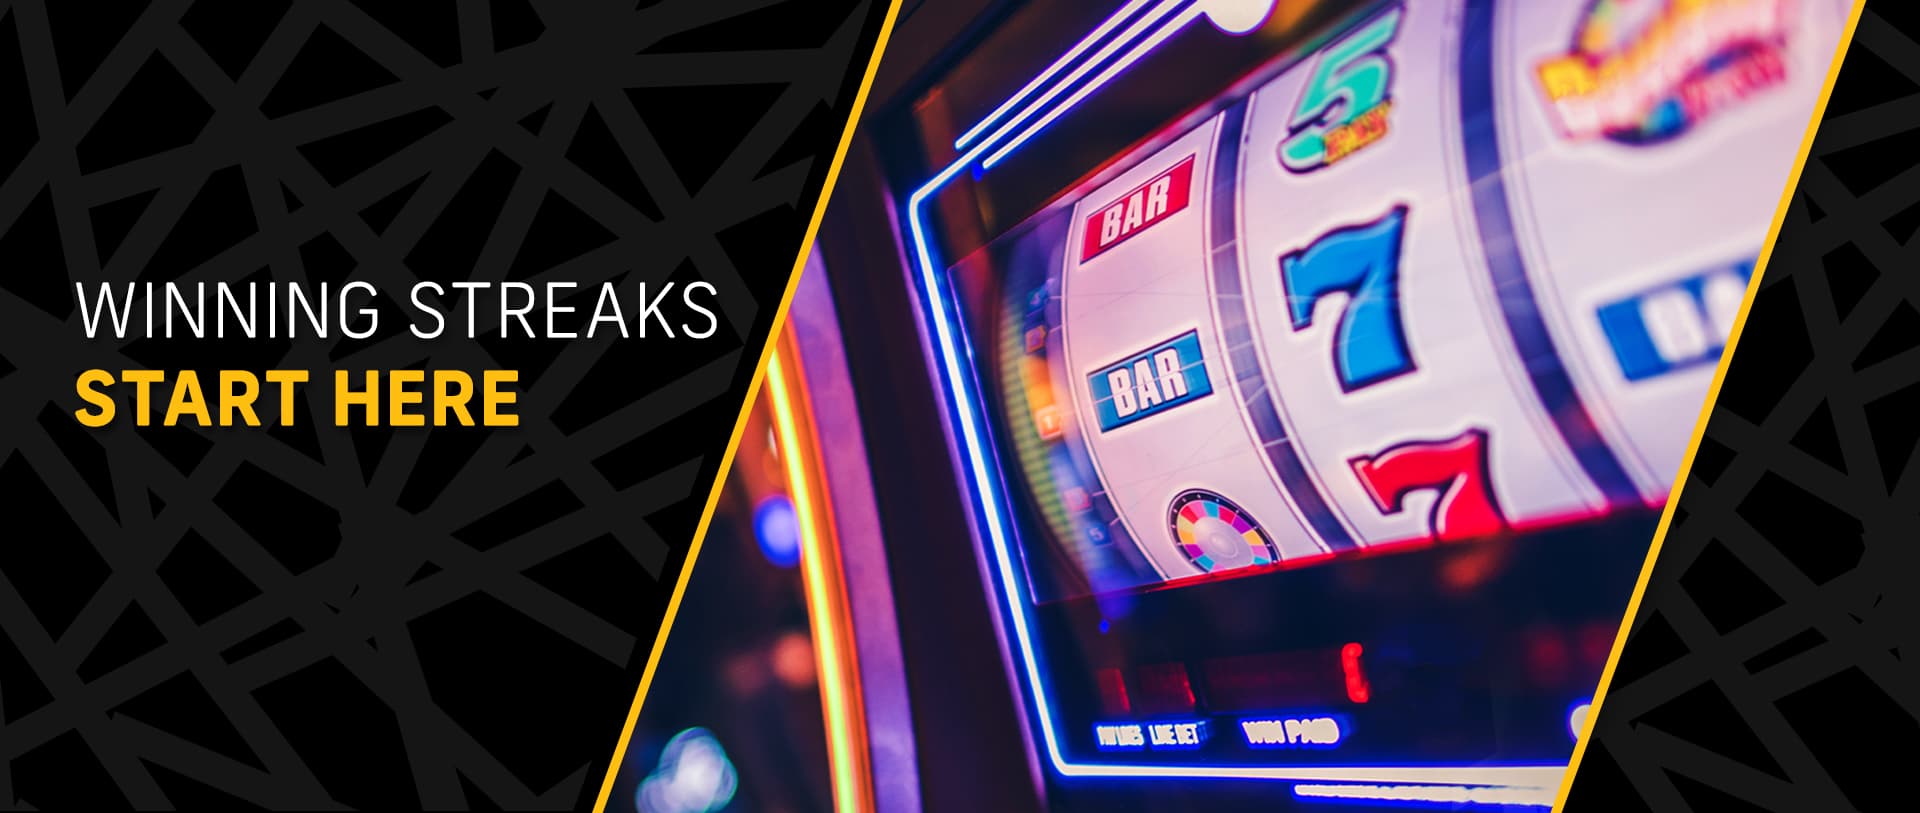 Winning streaks start here - screen of slot machine